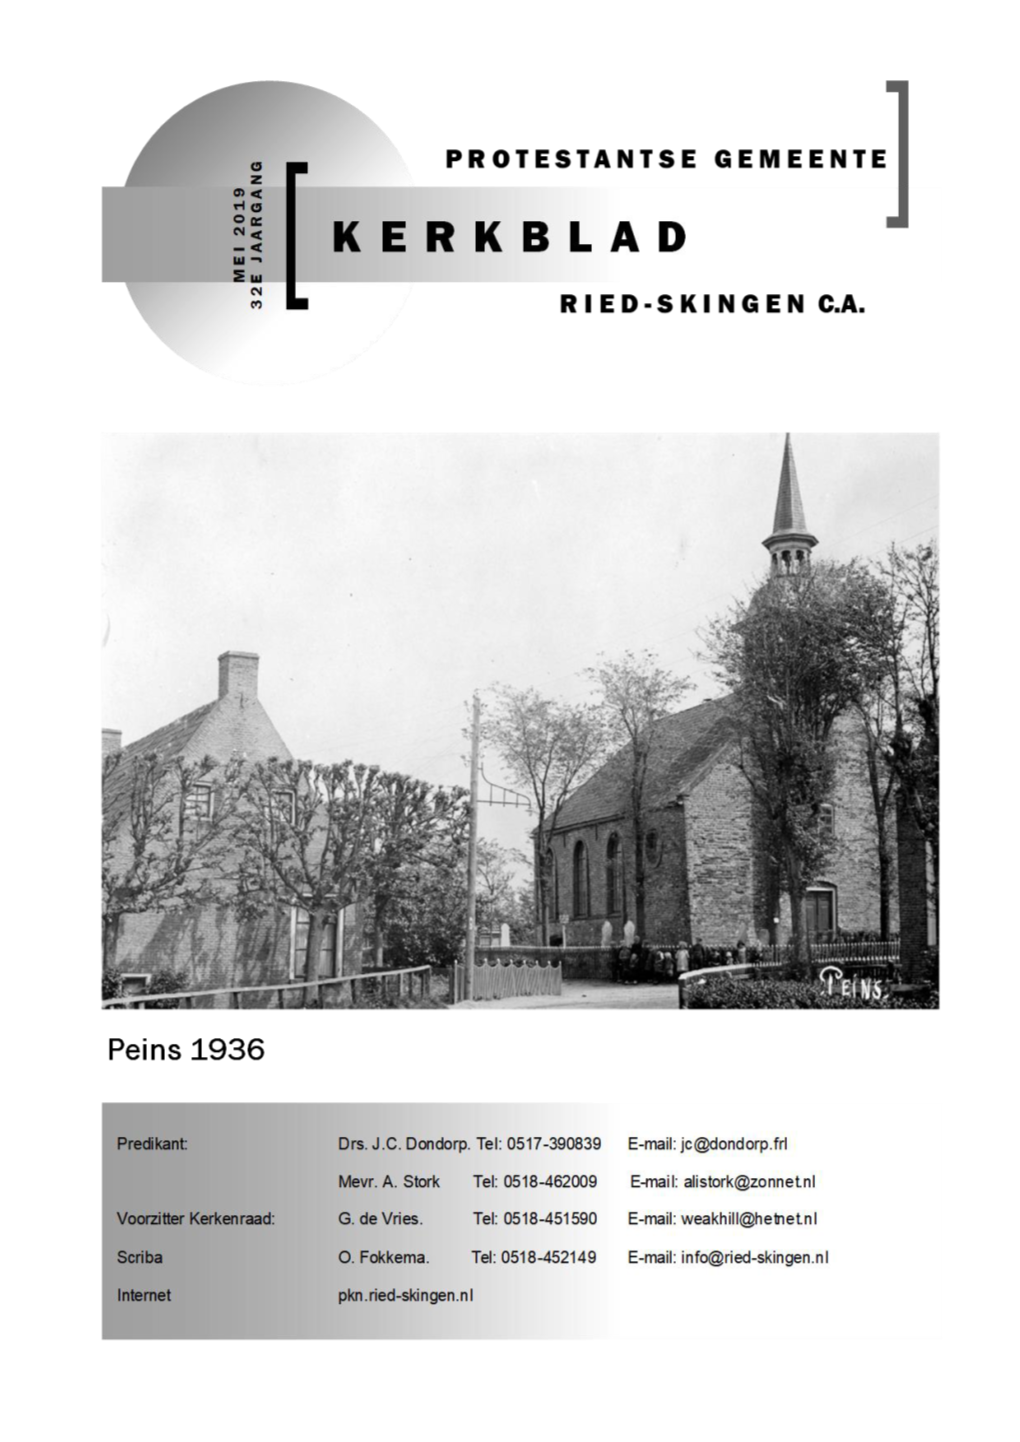 Kerkblad-Mei-2019-Definitief.Pdf